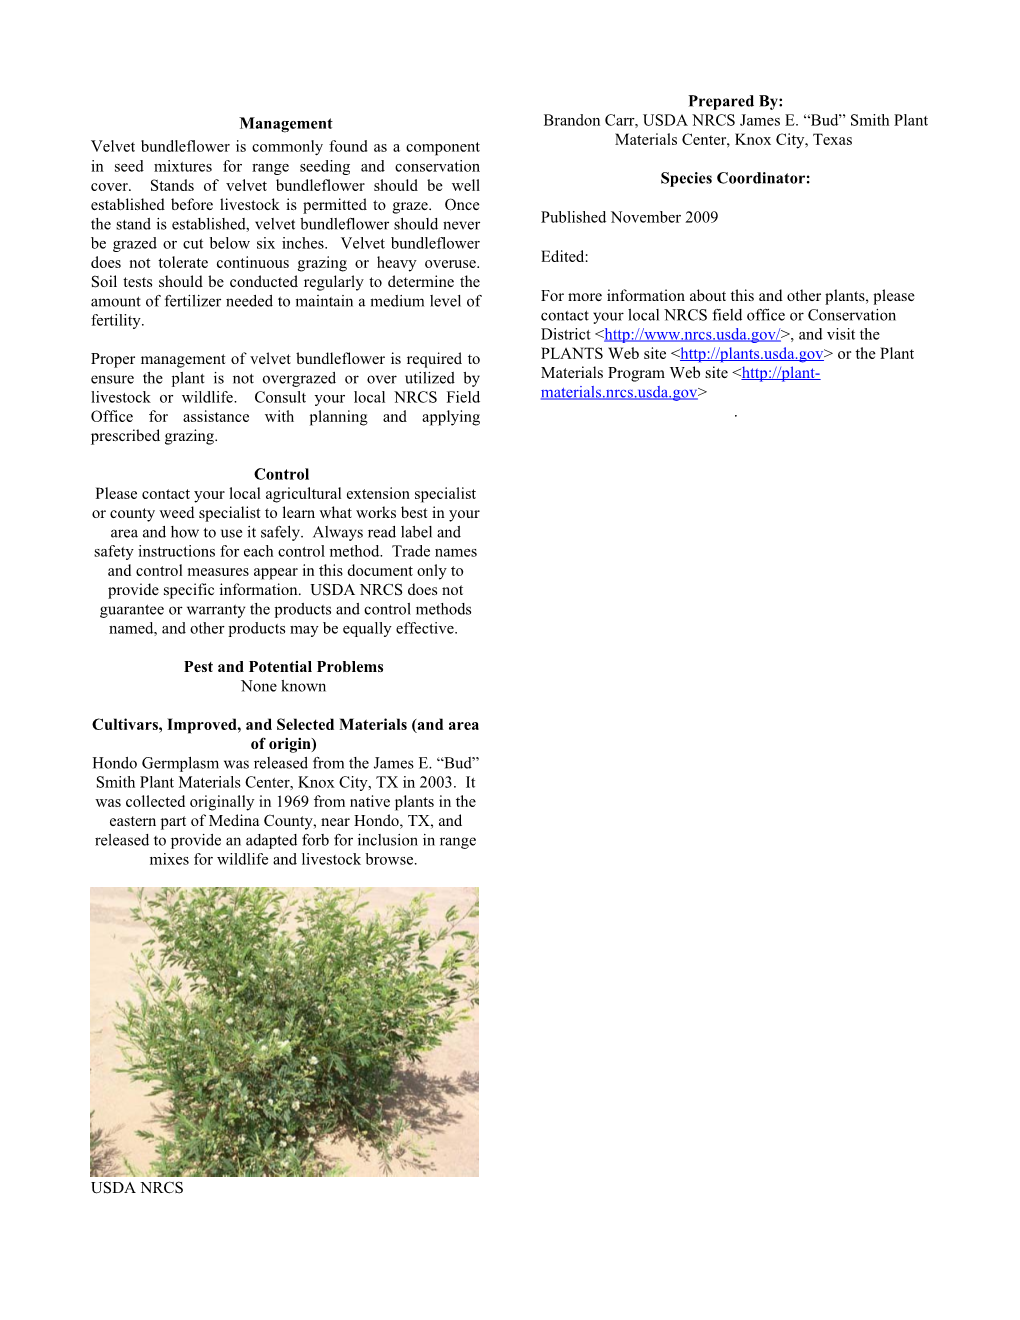 Velvet Bundleflower Plant Fact Sheet